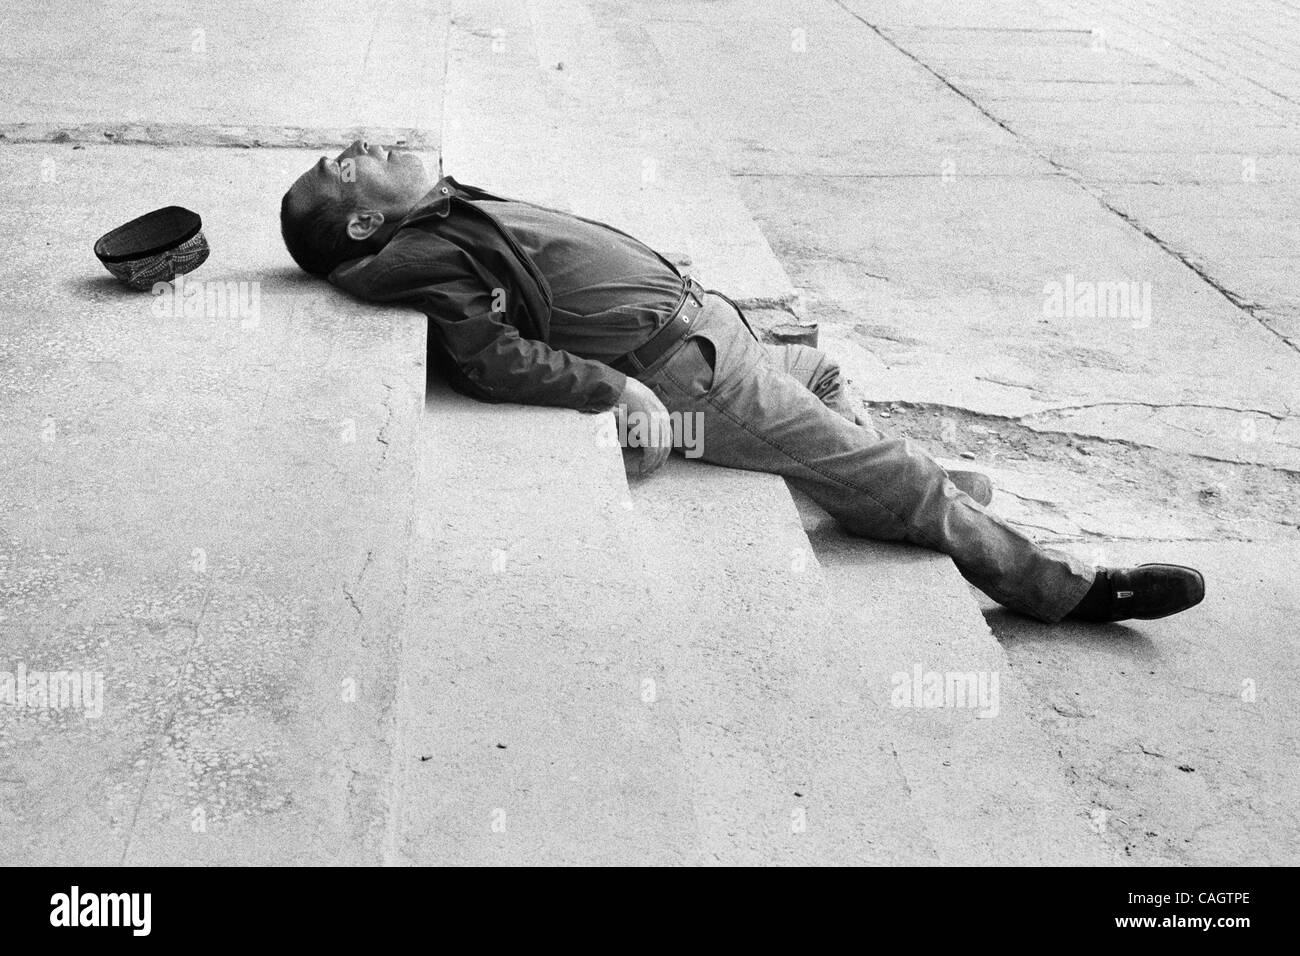 Feb 05, 2008 - CINA - Un Uighur uomo dorme sul marciapiede di Khotan. Molti Uiguri non riesce a trovare i posti di lavoro e girare per l estremismo religioso, droghe o alcol. (Credito Immagine: © David Degner/ZUMA Press) Foto Stock